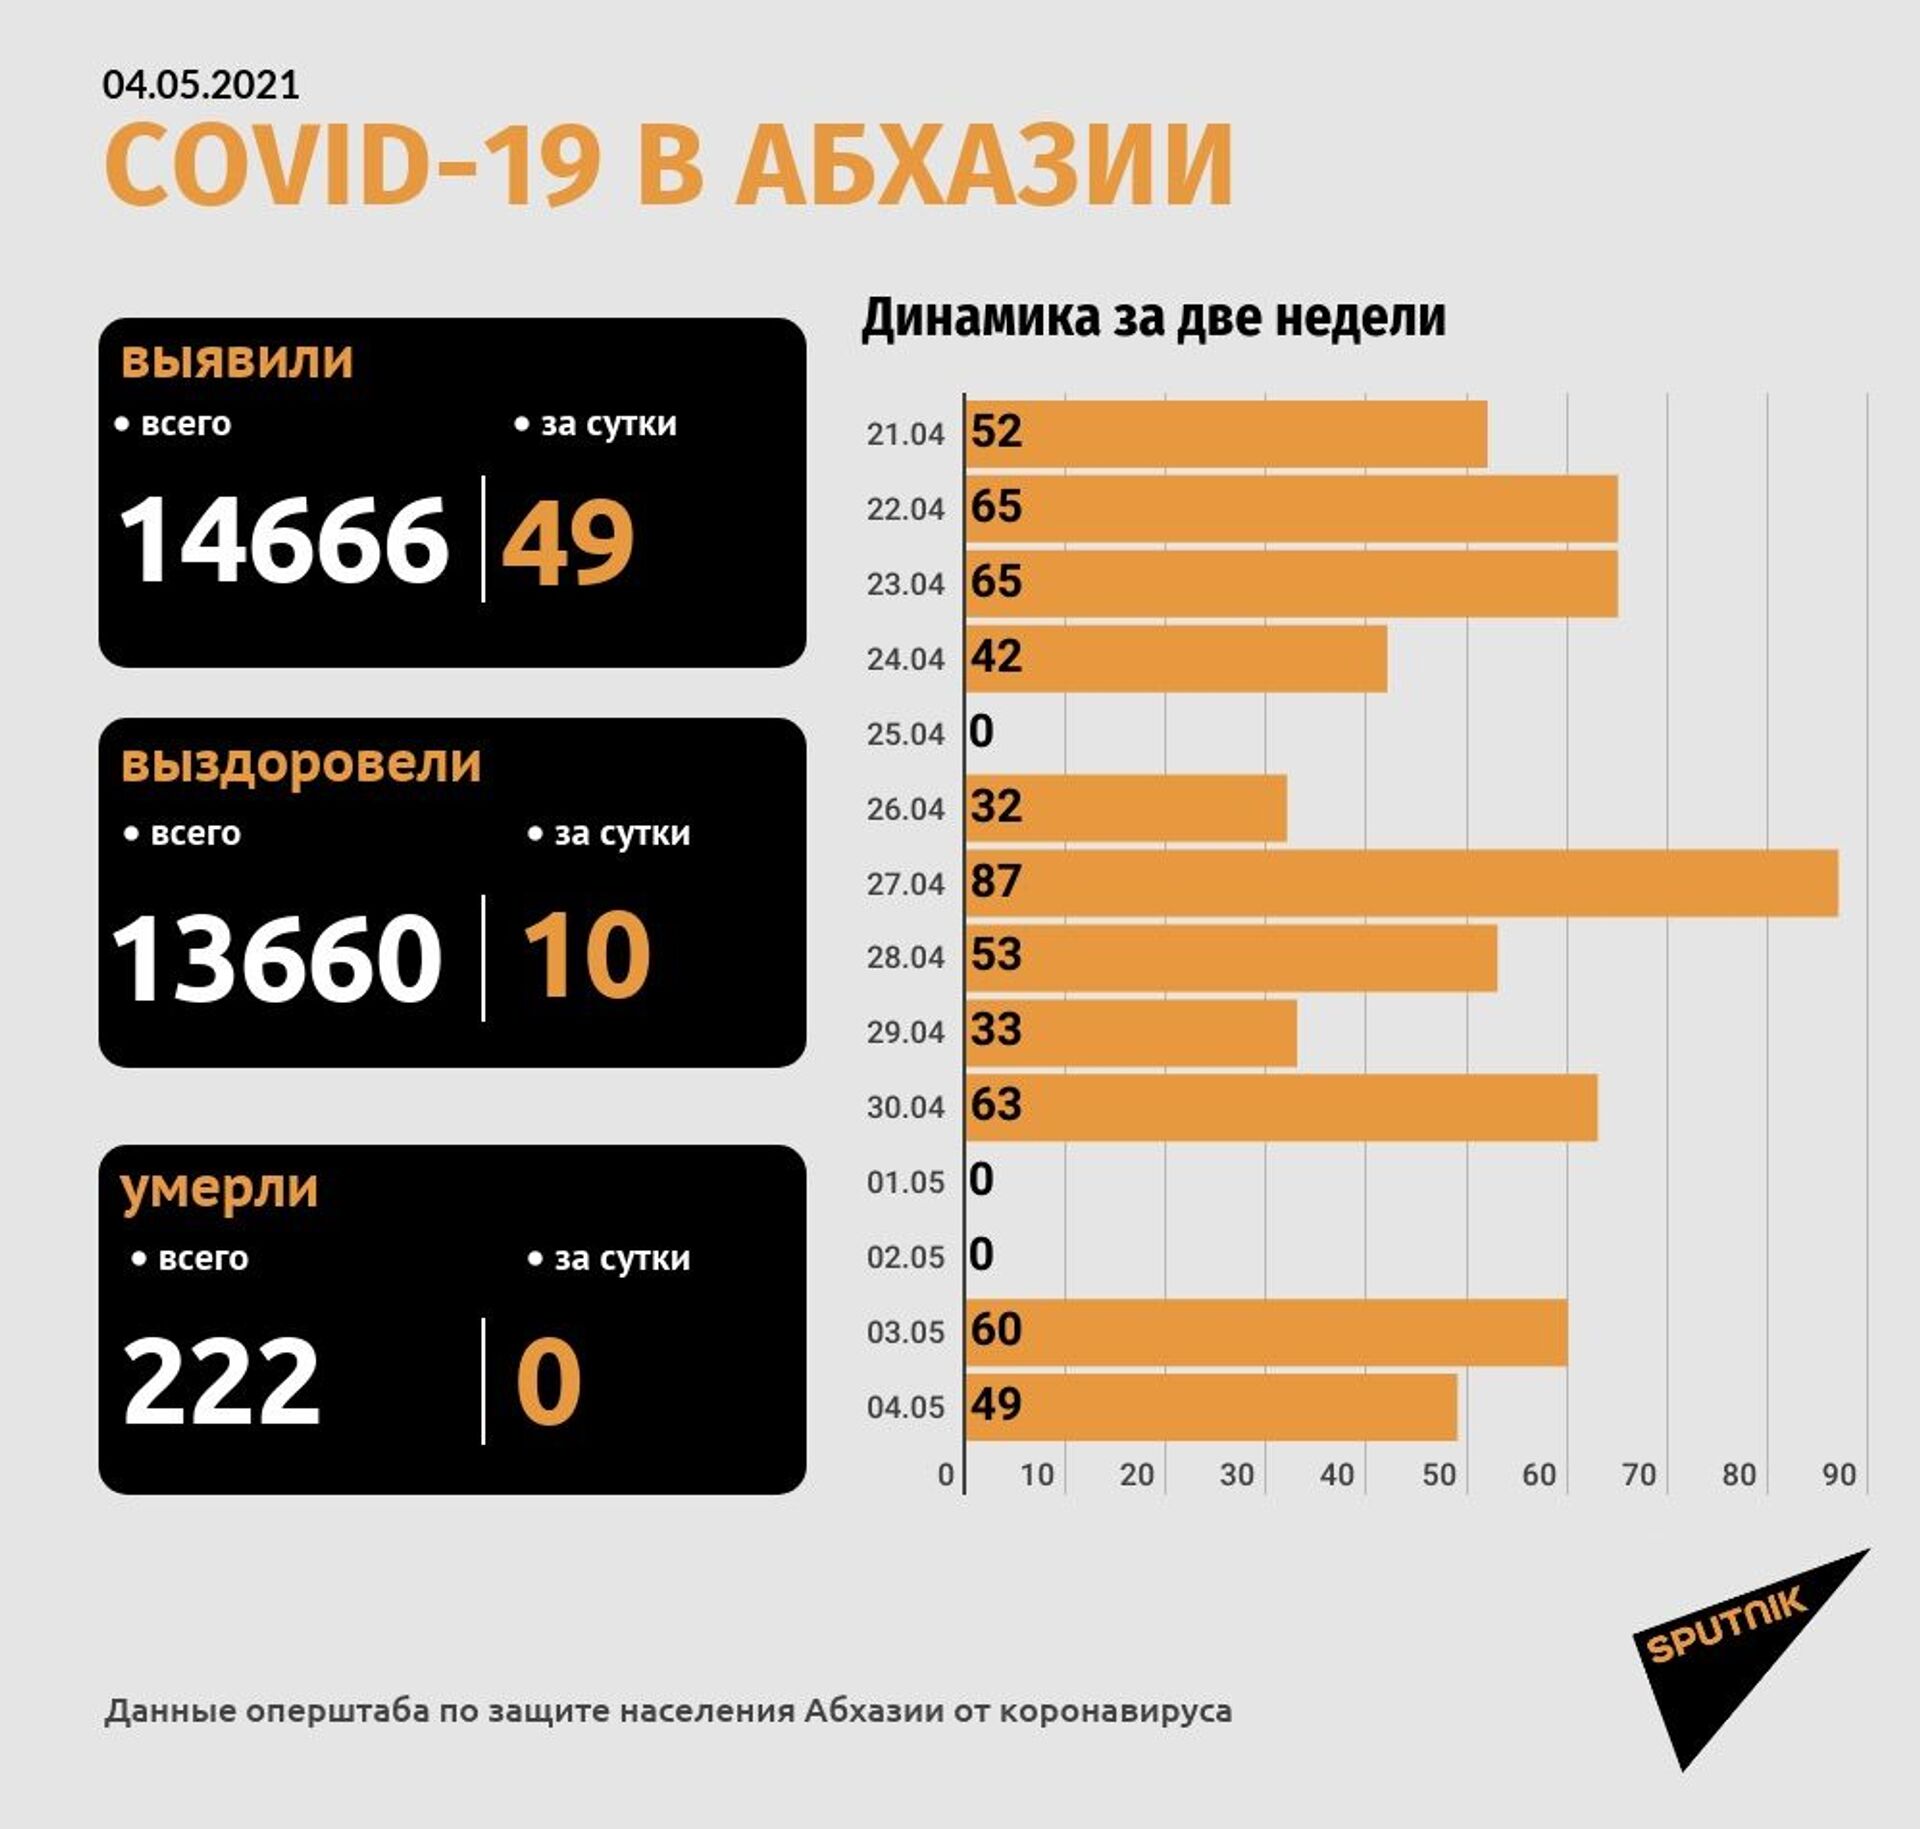 Коронавирус диагностирован у 49 человек в Абхазии за сутки - Sputnik Абхазия, 1920, 04.05.2021